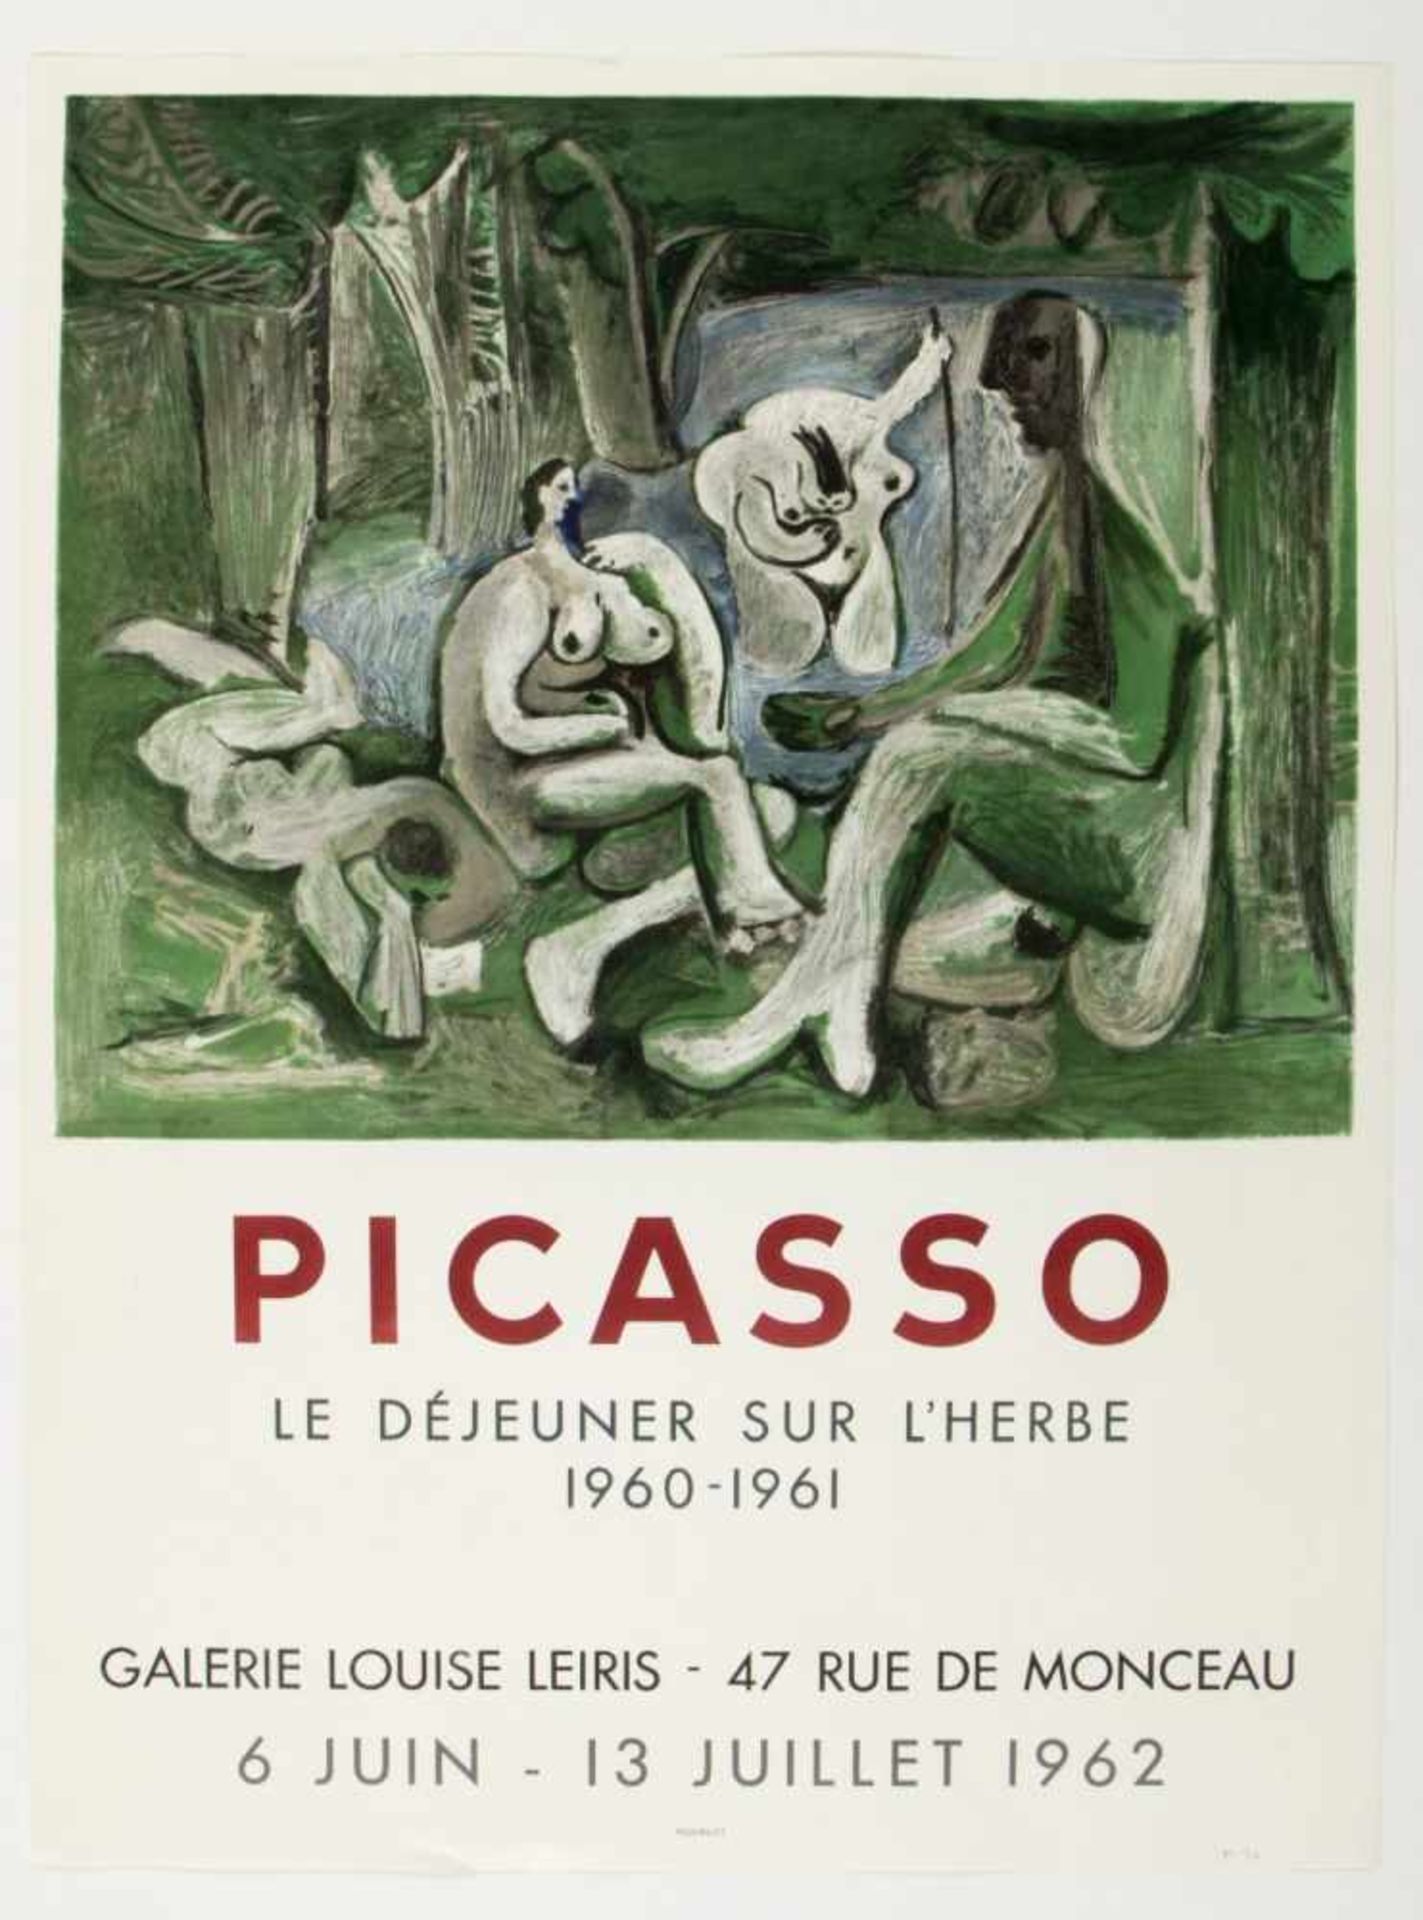 Picasso. Janssen. Chagall u.a.Ausstellungsplakate u.a. 16 Bll. versch. Techn. Bis 55,5 x 103 cm. - Image 5 of 5